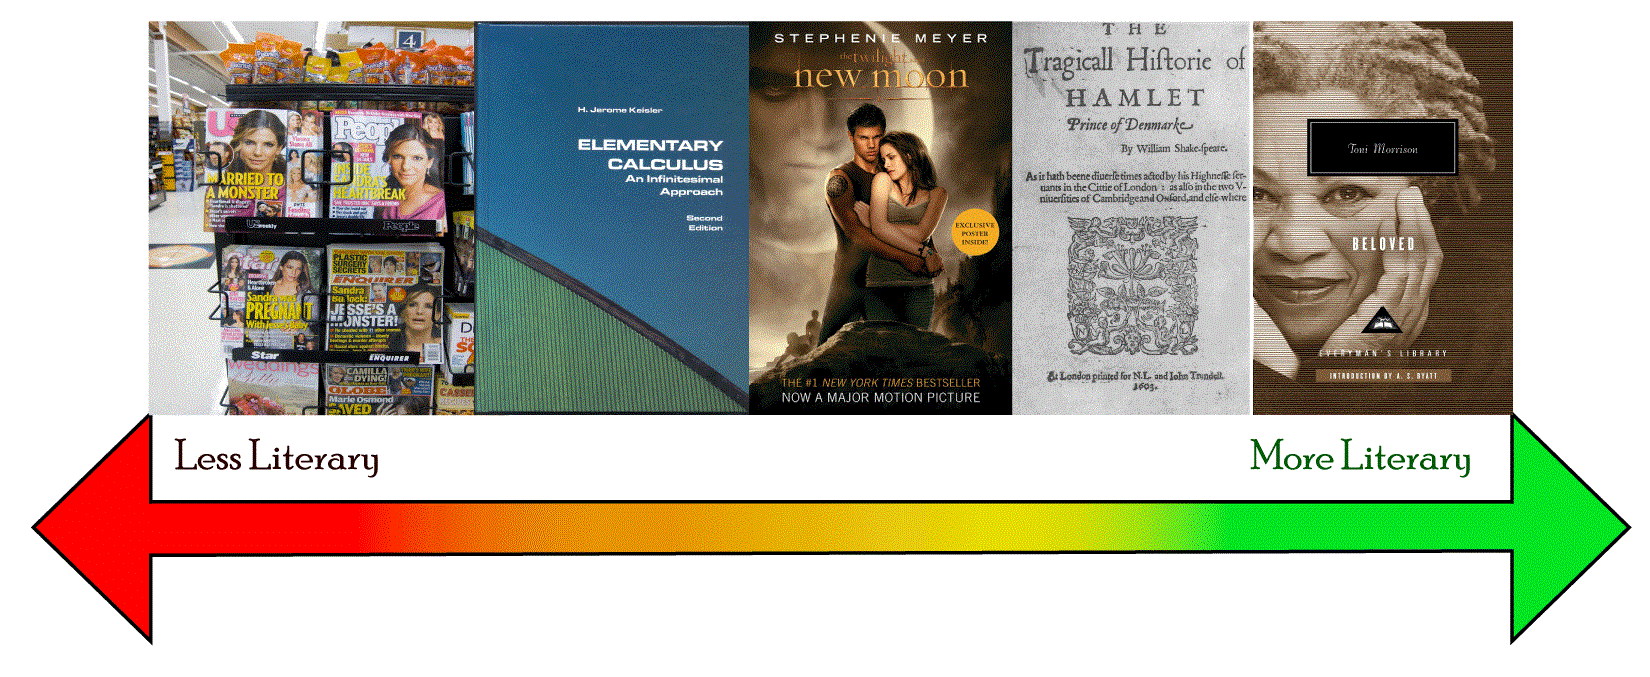 espectro literario: una colección de textos de muestra organizados de menos literarios a más literarios, con la revista People en la extrema izquierda y Shakespeare y Toni Morrison en el extremo derecho